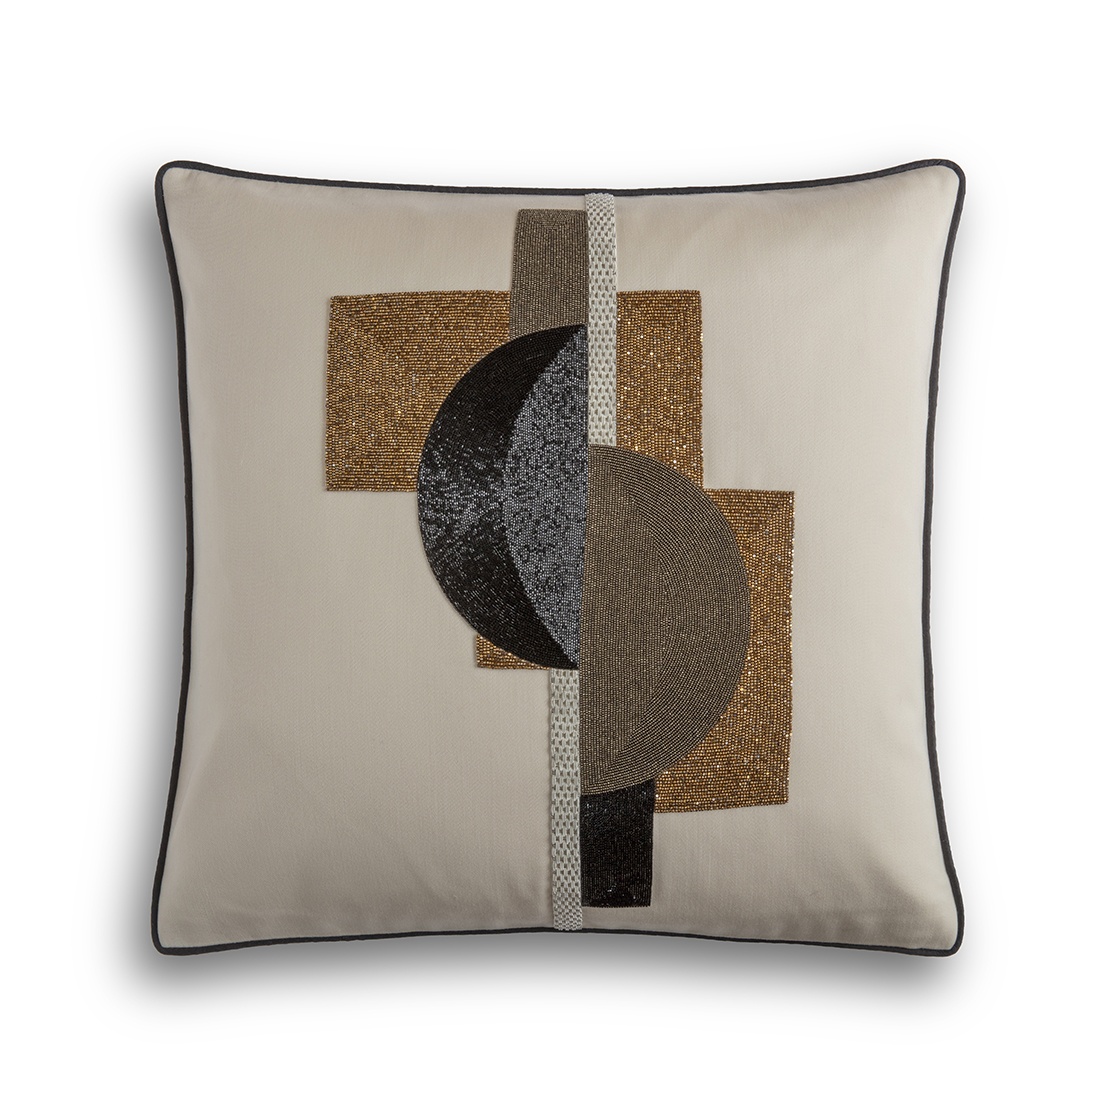 Piet cushion in Eriskay wool - Cloud - Beaumont & Fletcher